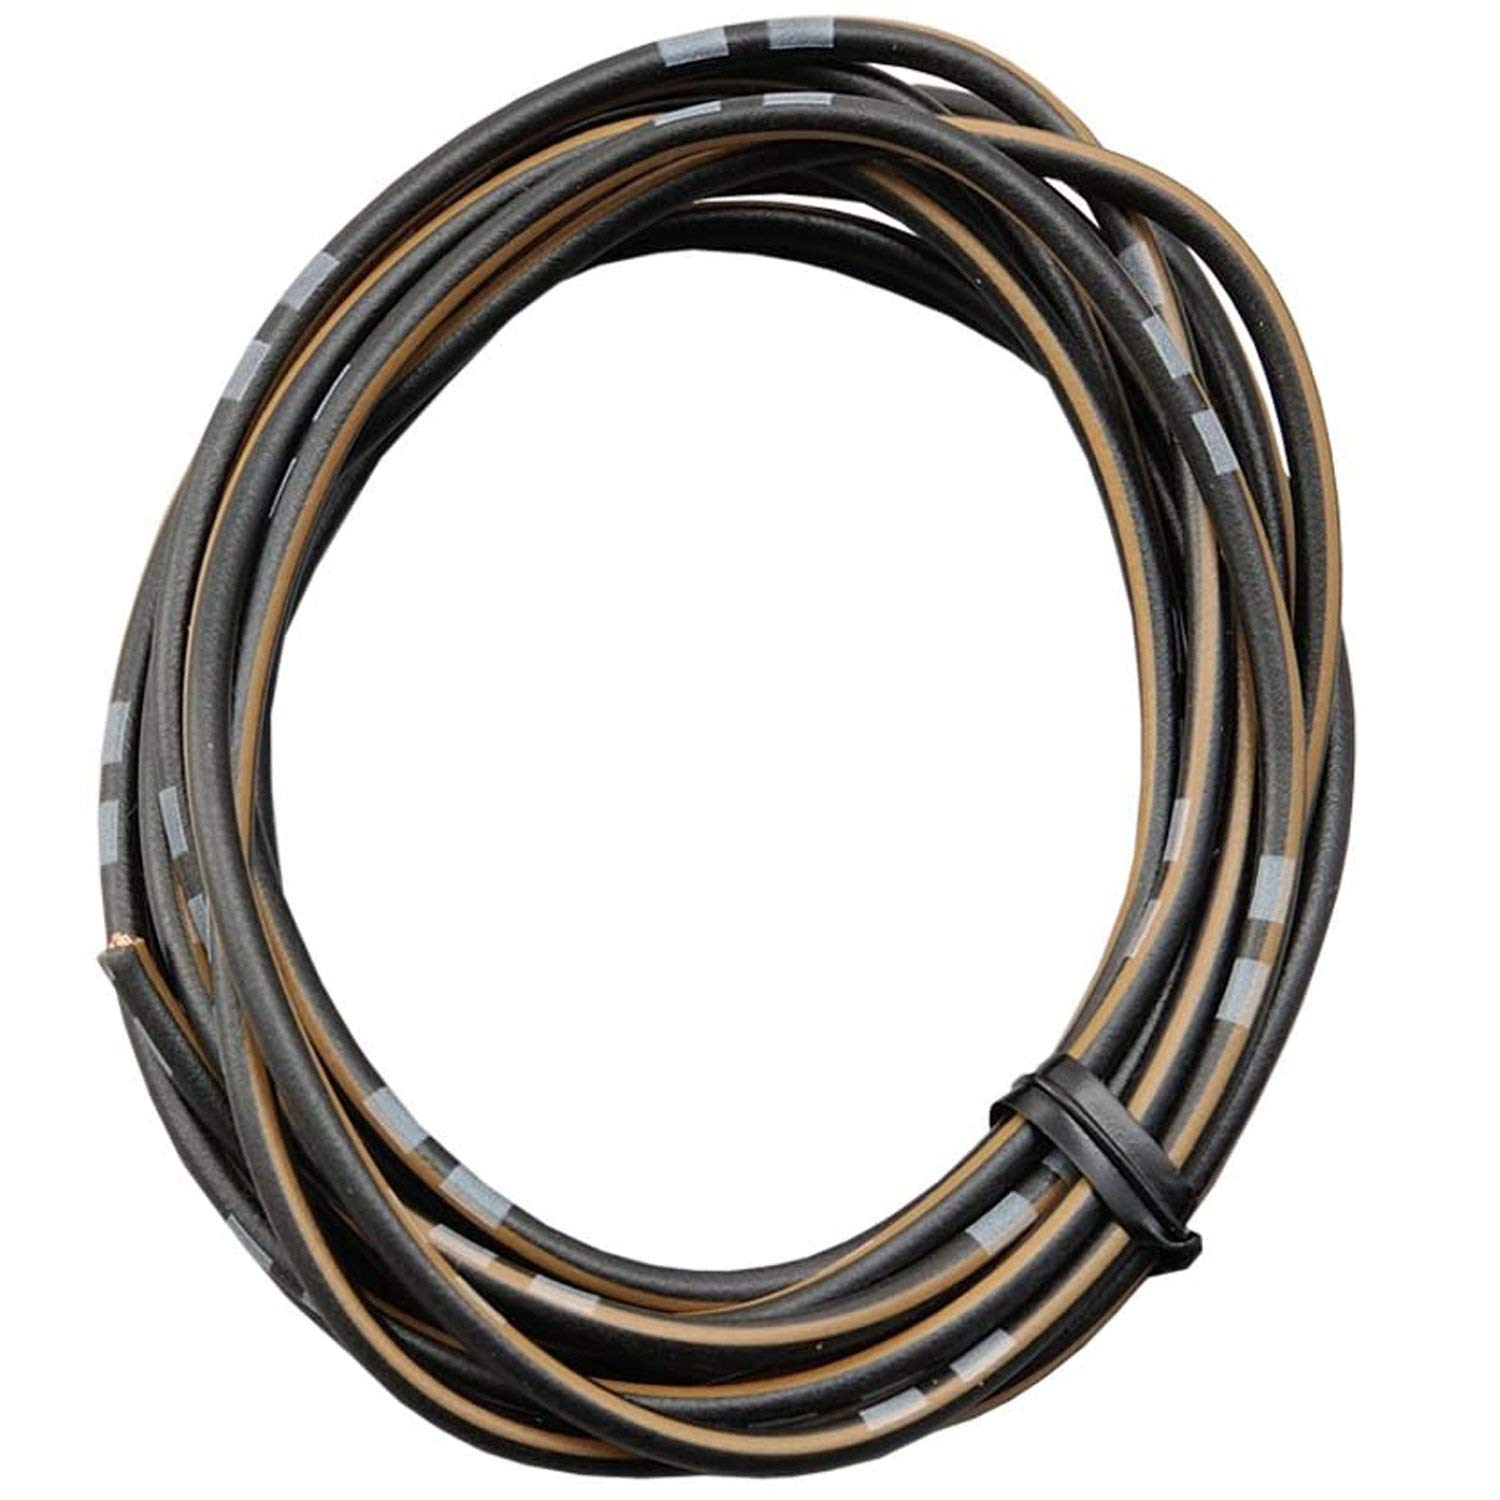 DAYTONA farbiges Kabel AWG18 0.75qmm, 2 Meter, schwarz/braun von Daytona